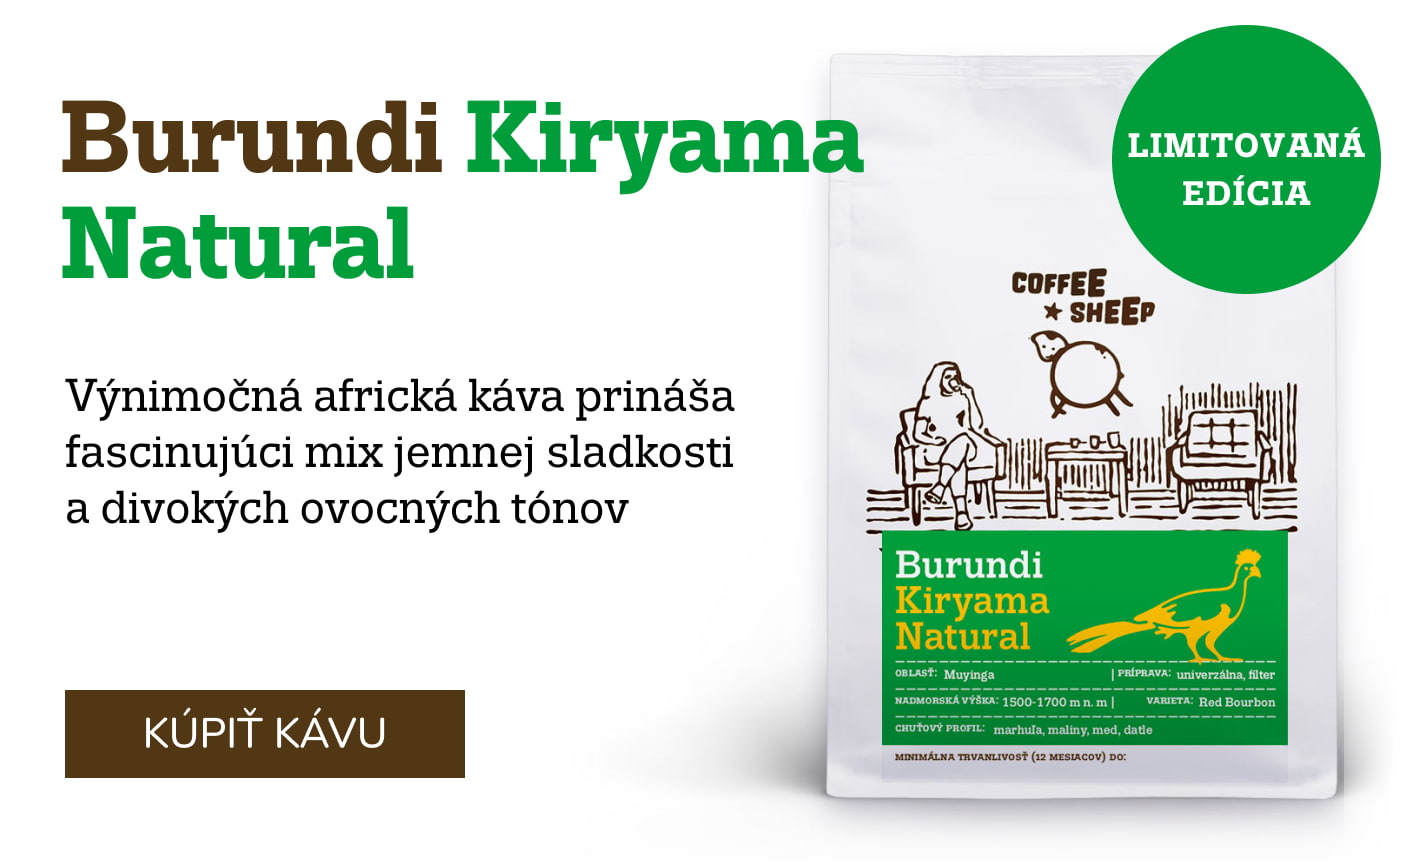 Burundi Kiryama Natural - prémiová káva / limitovaná edícia